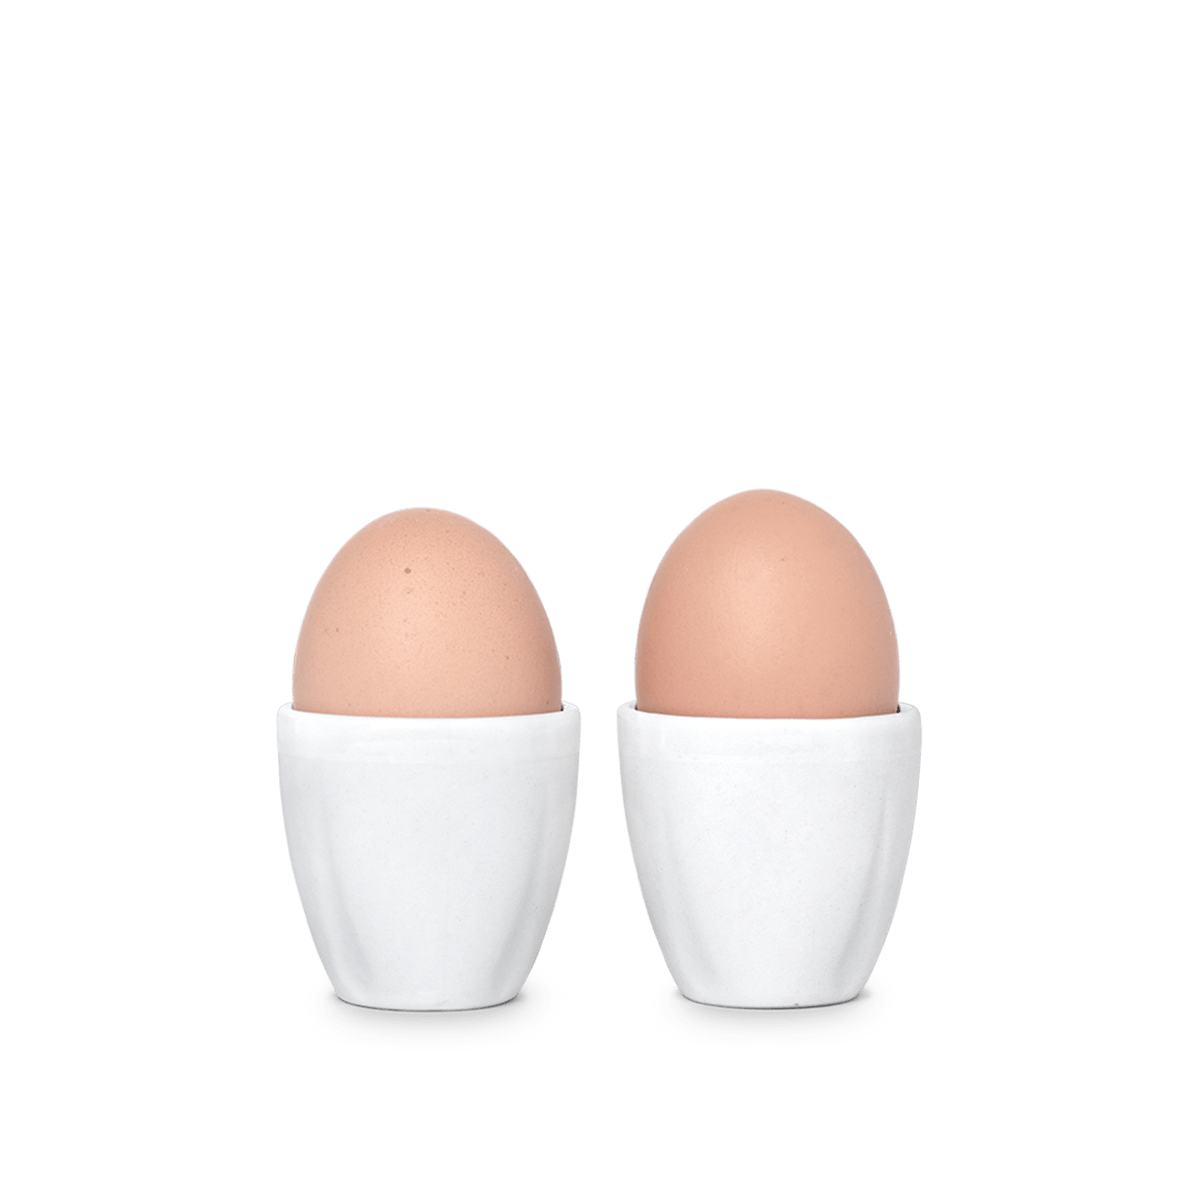 Rosendahl - Grand Cru æggebæger - 2 stk